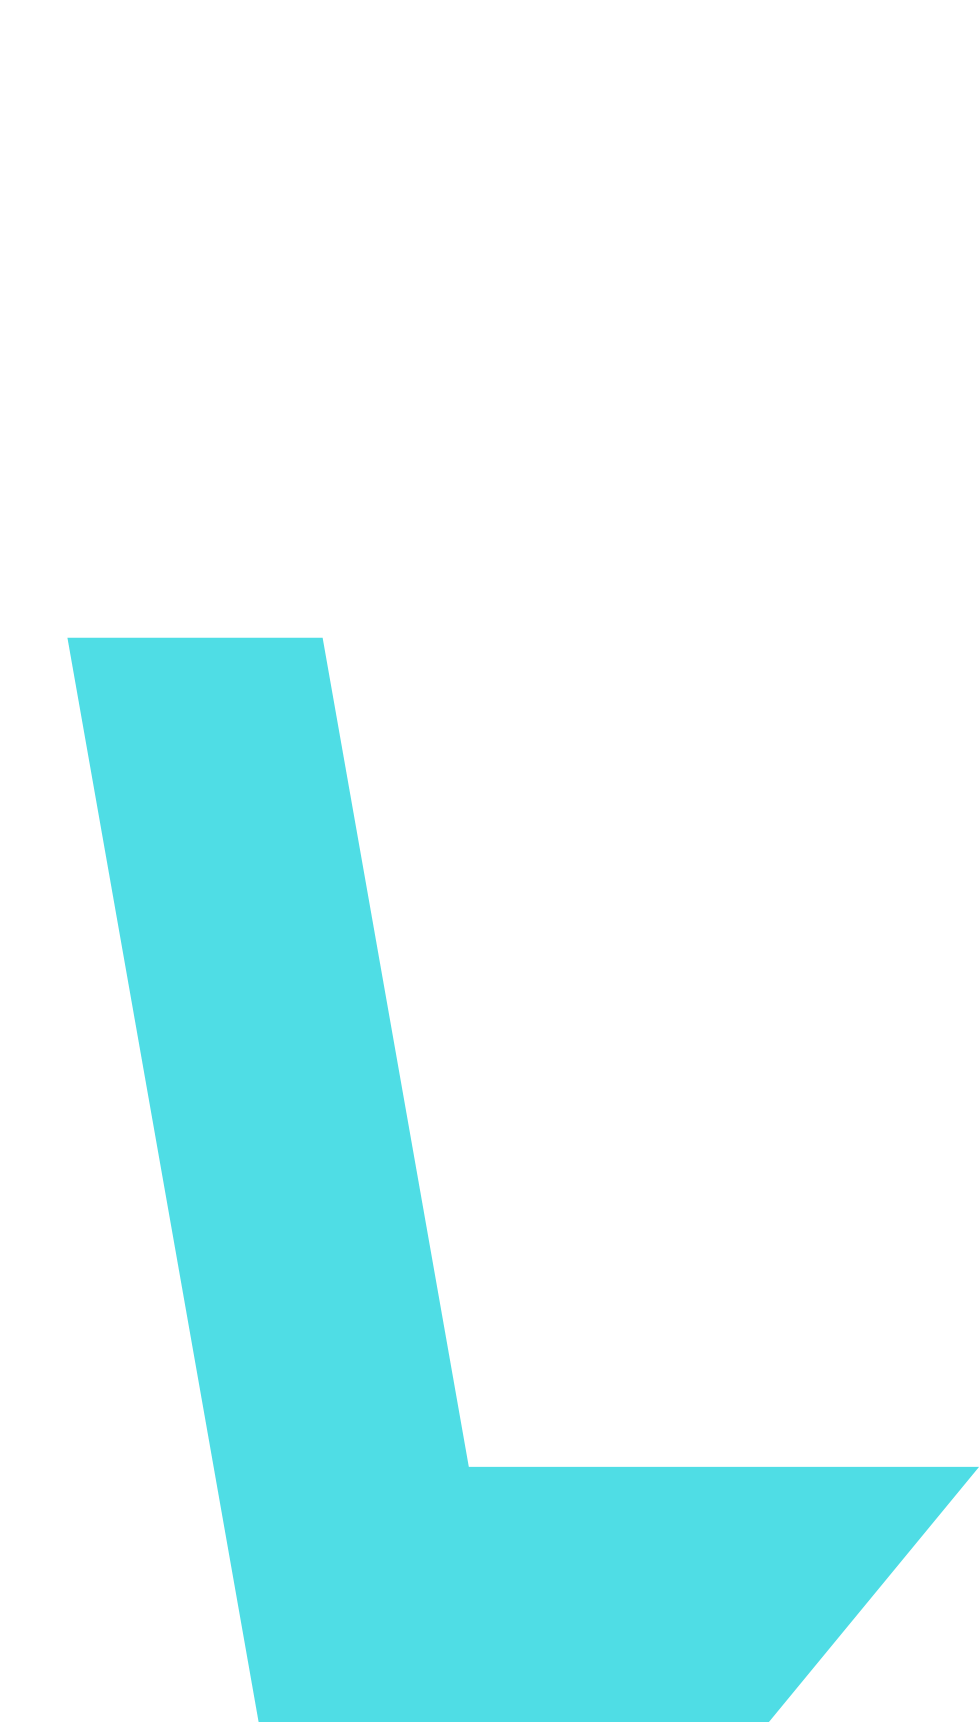 Left Lane Auto - Logo and Branding